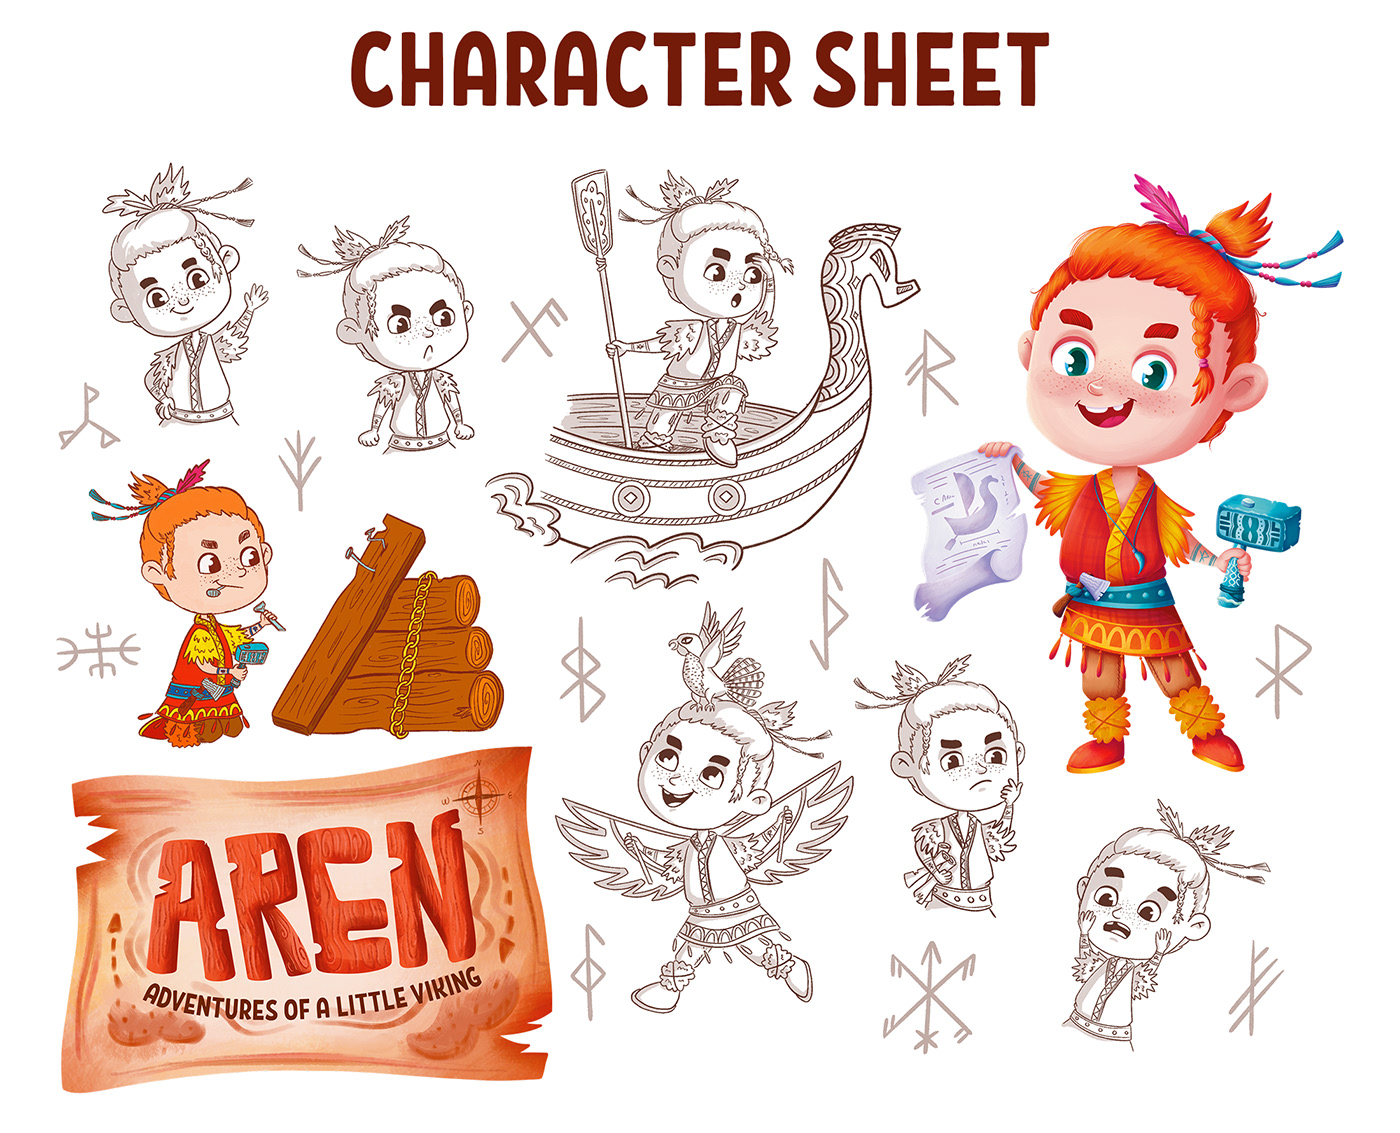 Character design  Character characterdesign children's book children illustration children book children's illustration characters ChildrenIllustration children books